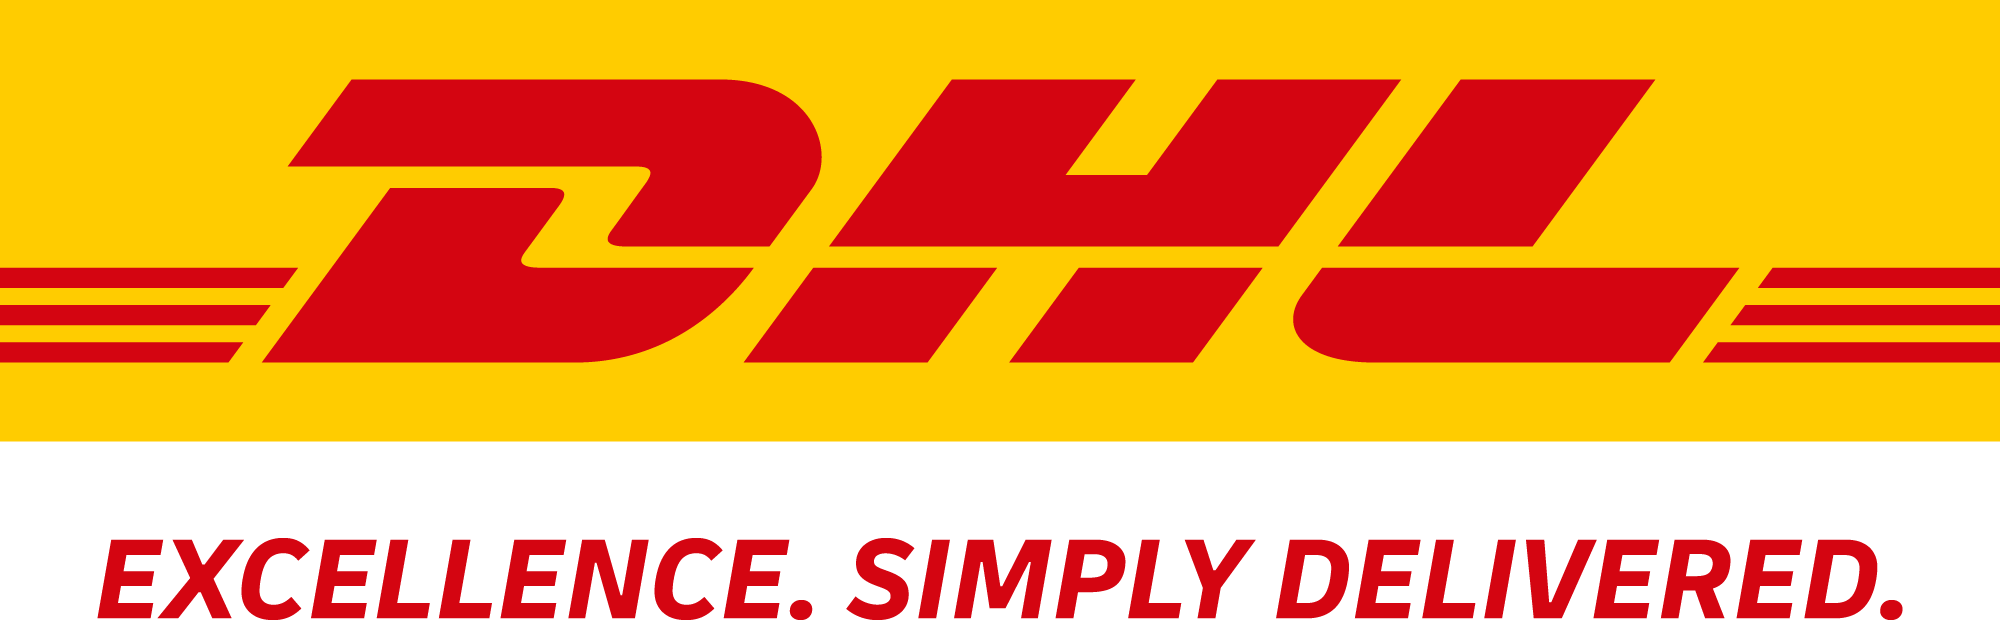 DHL_logo_claim_beneath_rgb